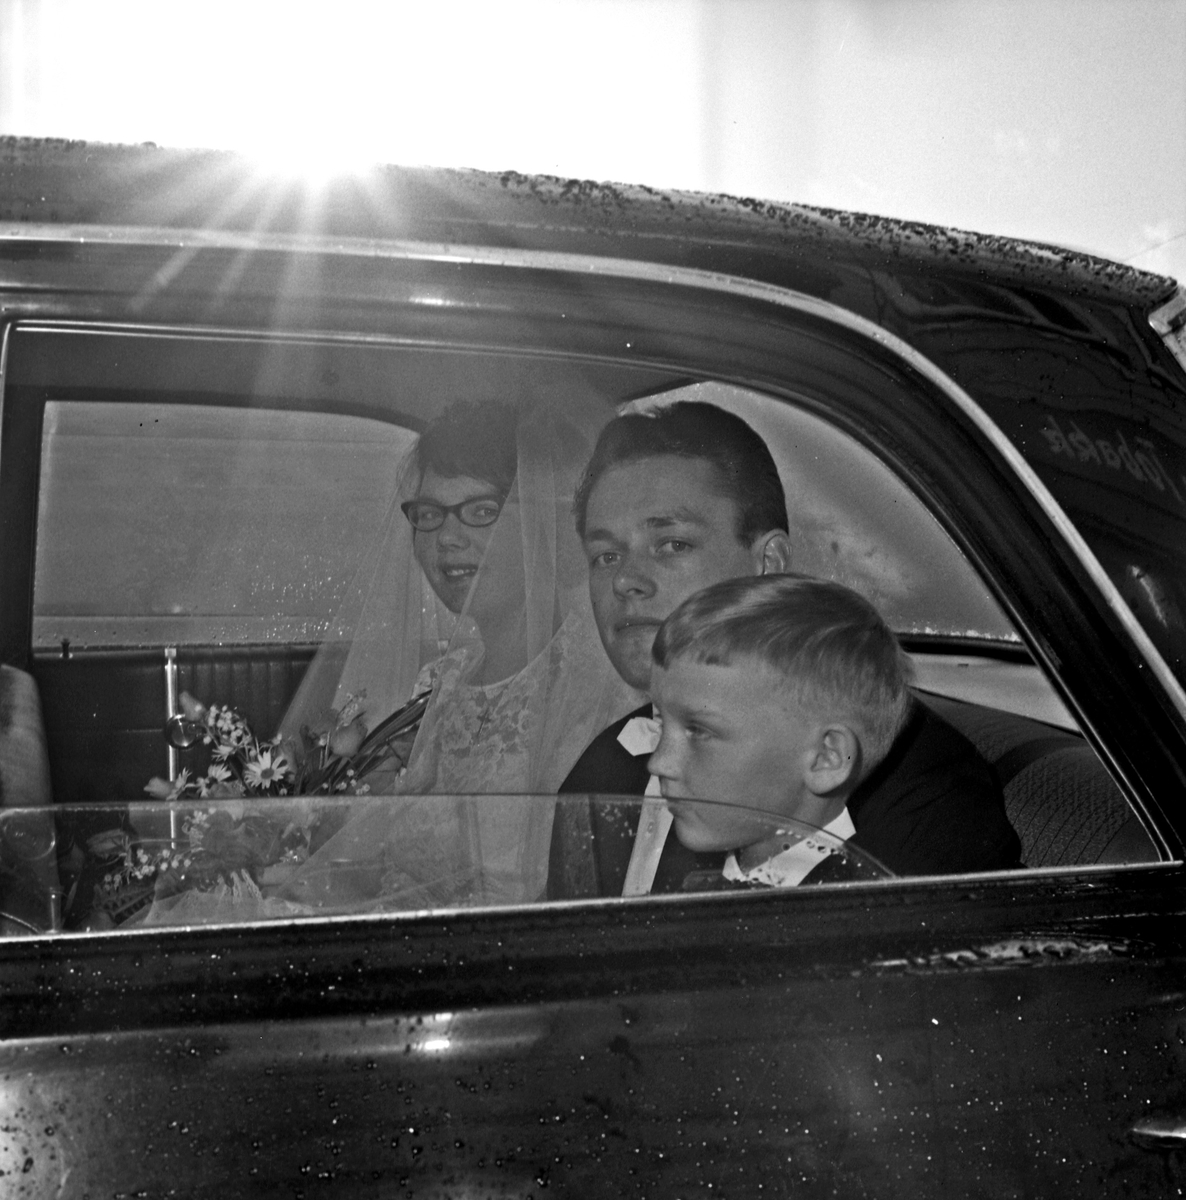 Bryllup brudeparet ankommer kirken, under vielsen og når de forlater kirken - bestiller Magne Hundsnes